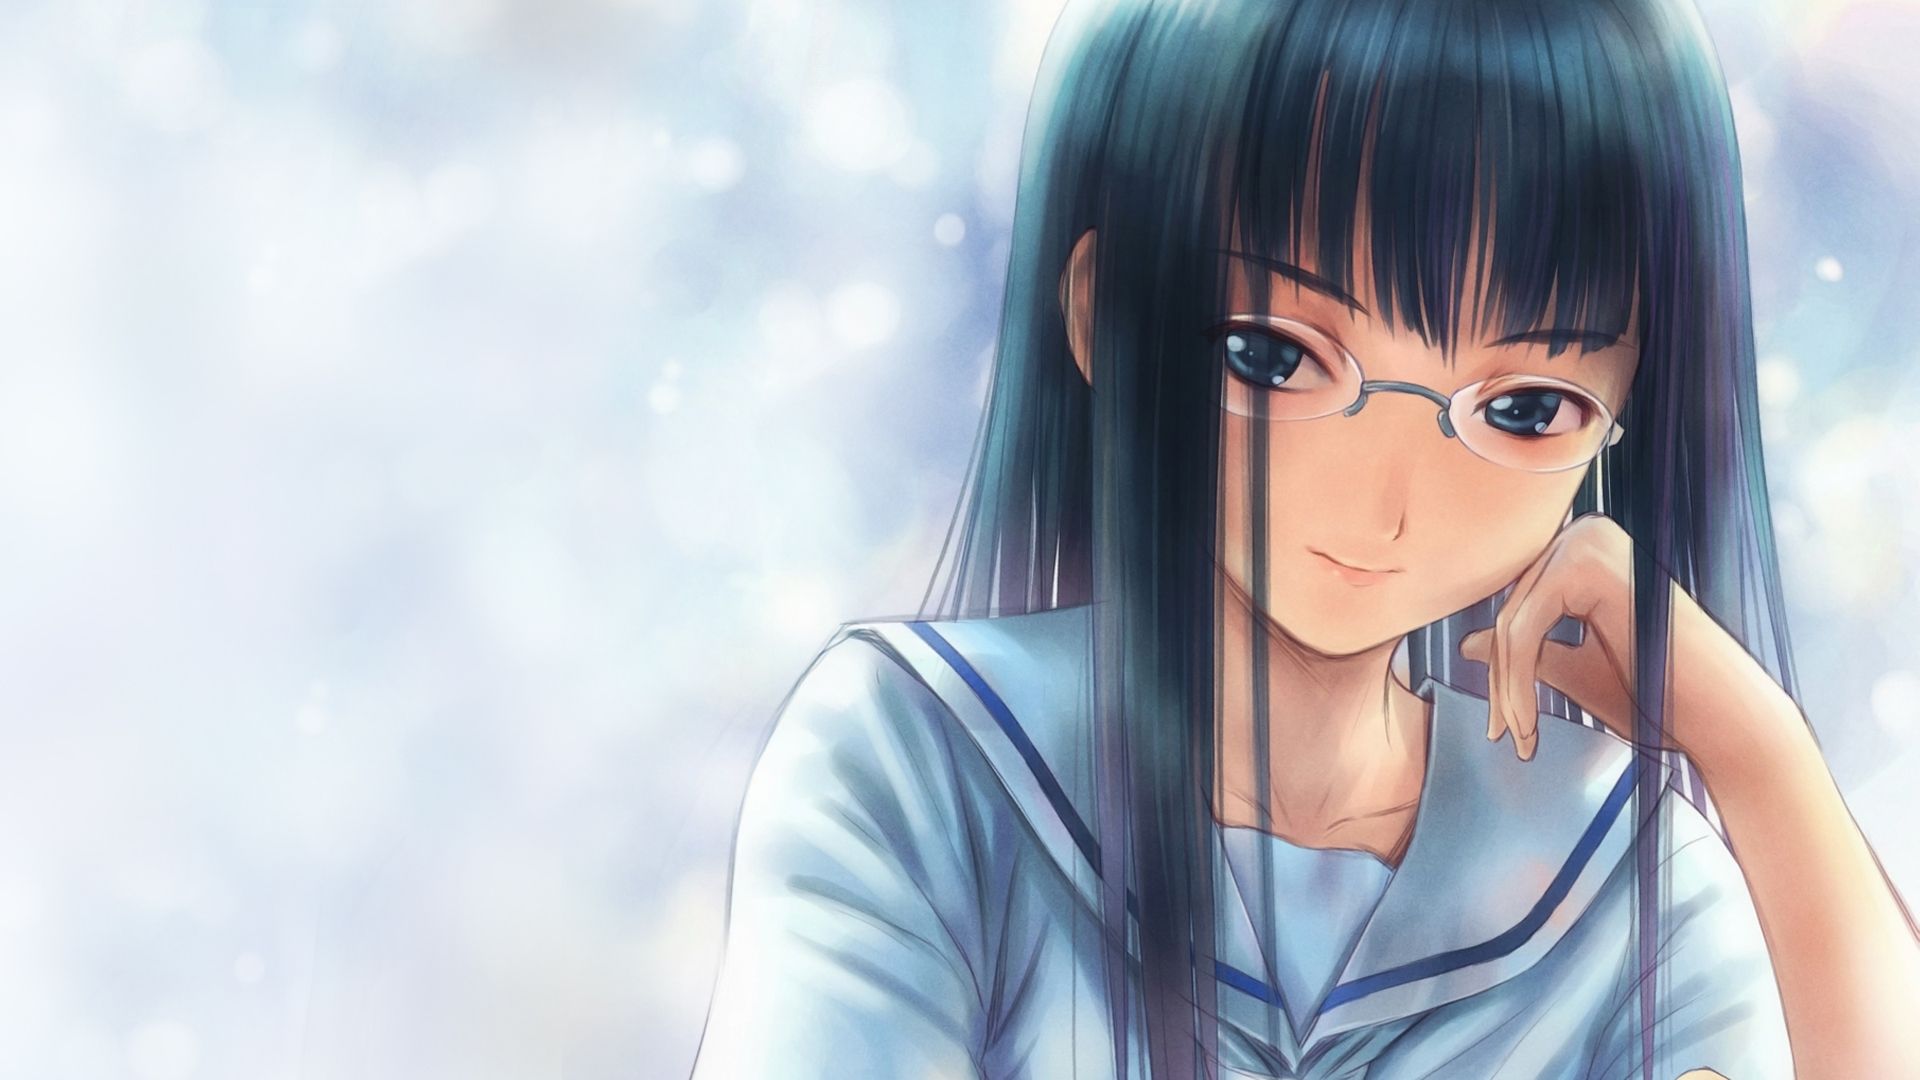 HD wallpaper: anime, anime girls, dark hair, face, glasses